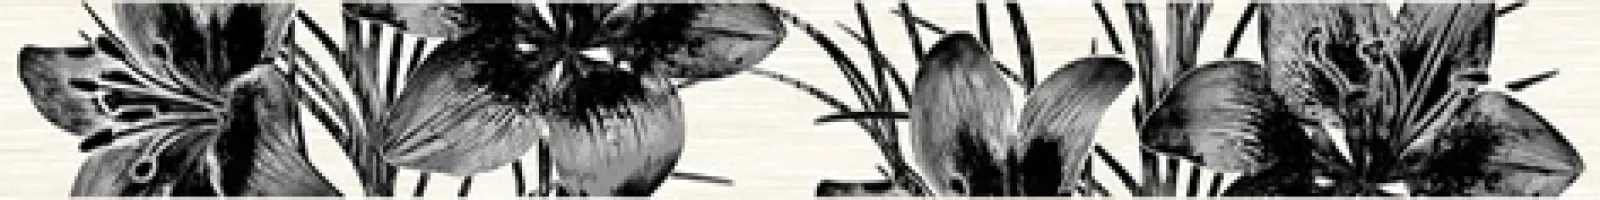 Плитка настенная Нефрит 40x5 бордюр Piano черн. 56-03-04-081 86-02-04-81 Пиано матовая глазурованная